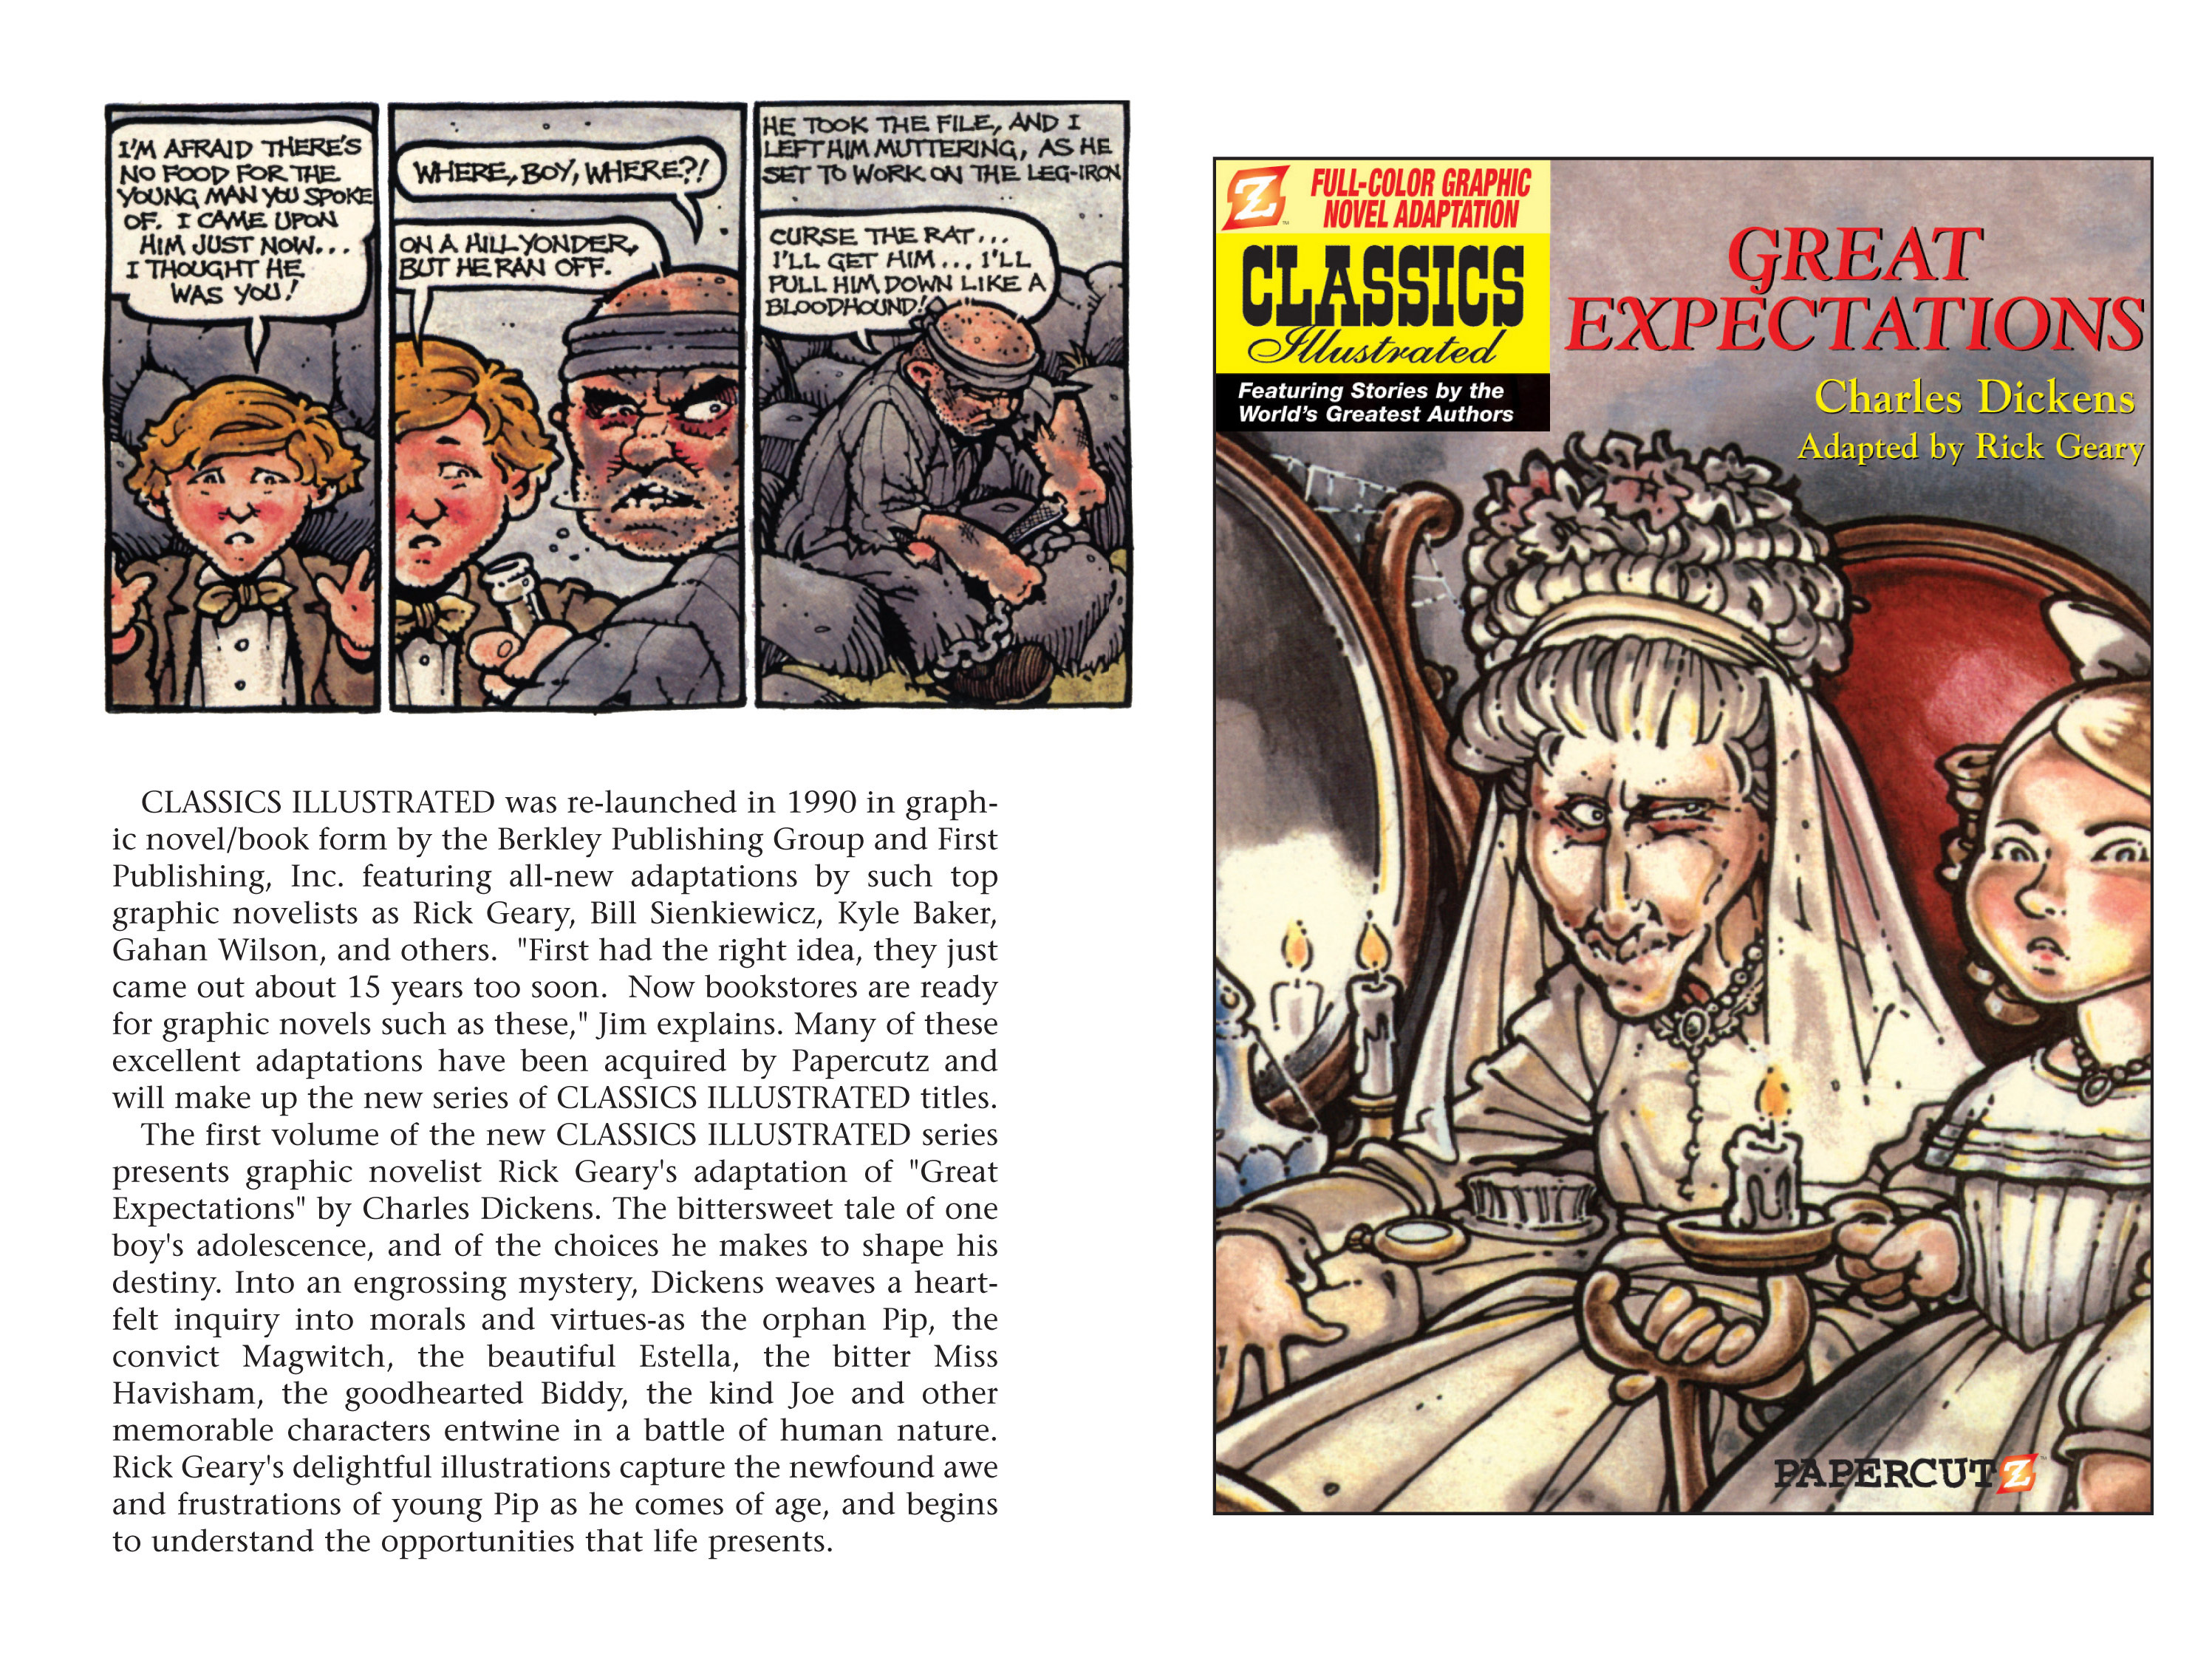 Read online Nancy Drew comic -  Issue #9 - 101